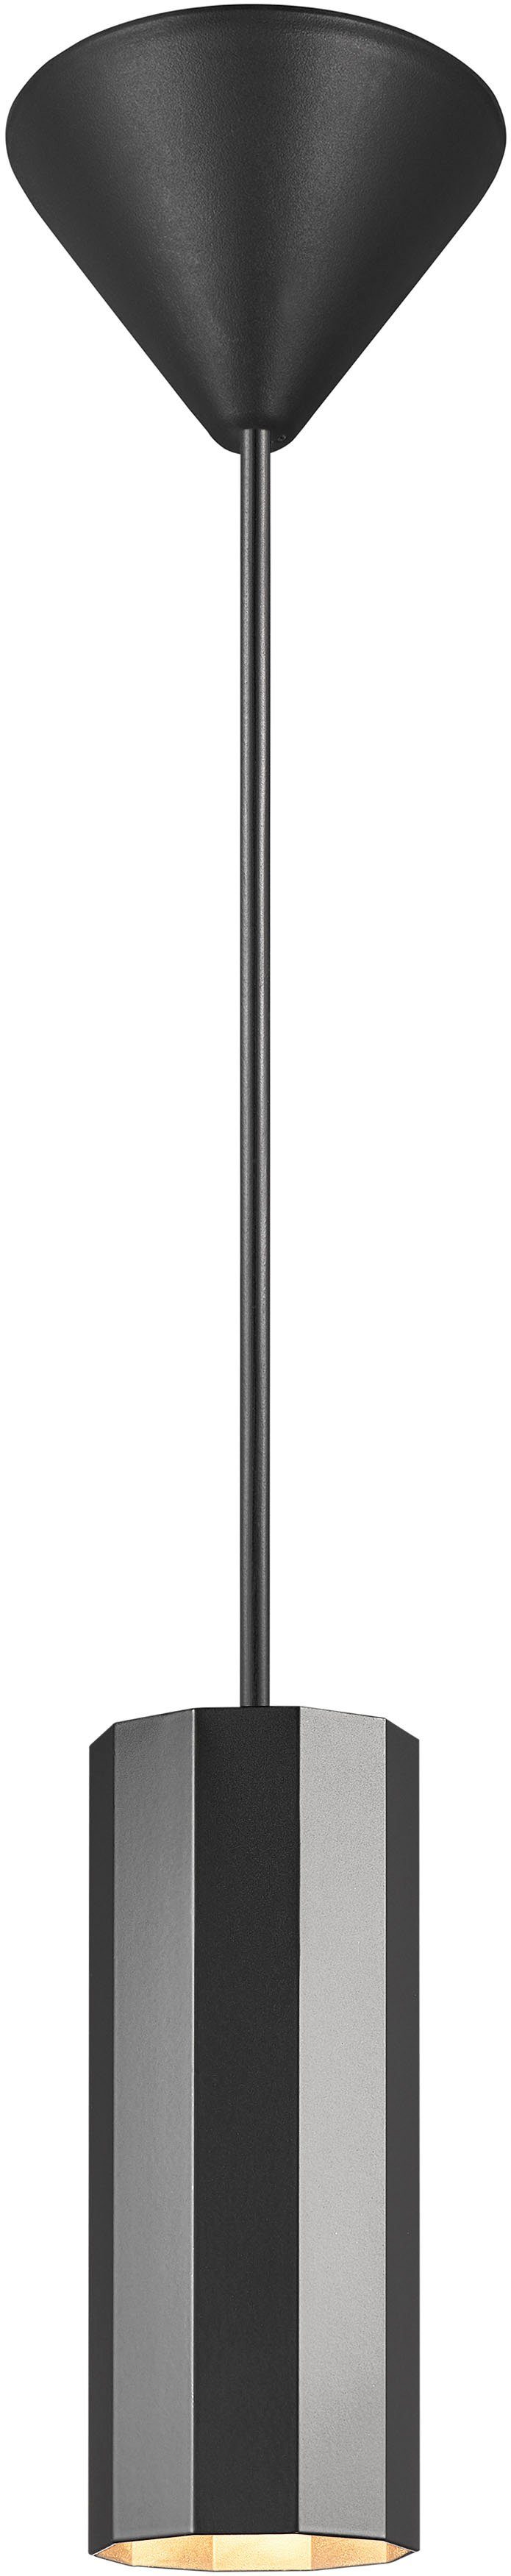 Nordlux Pendelleuchte Alanis, ohne Leuchtmittel, Minimalistisches Design,  10-seitiges Profil, matter Messing-Look, Ein-/Aus-Schalter oben am  Lampenkopf